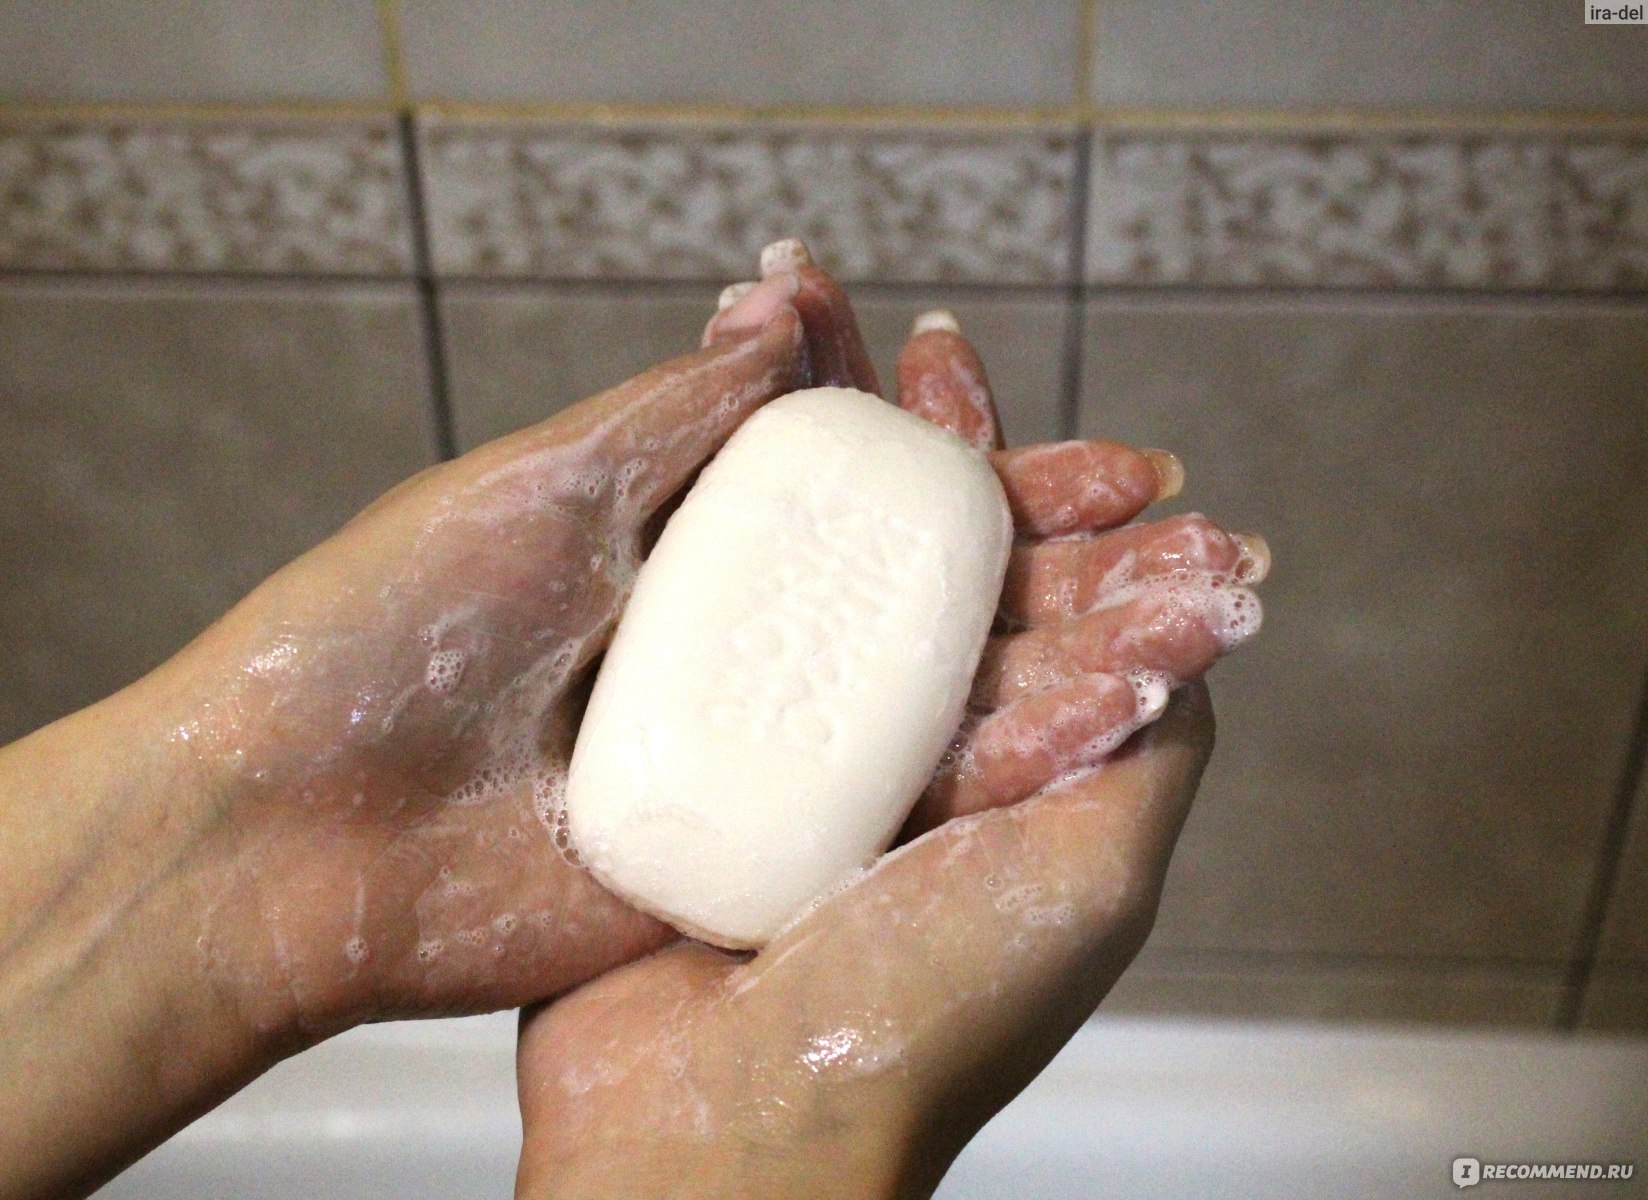 Каким лучше подмываться. Каким мылом лучше подмываться. Подмываться детским мылом. Мыло с которым подмываются. Надо ли подмываться мылом?.